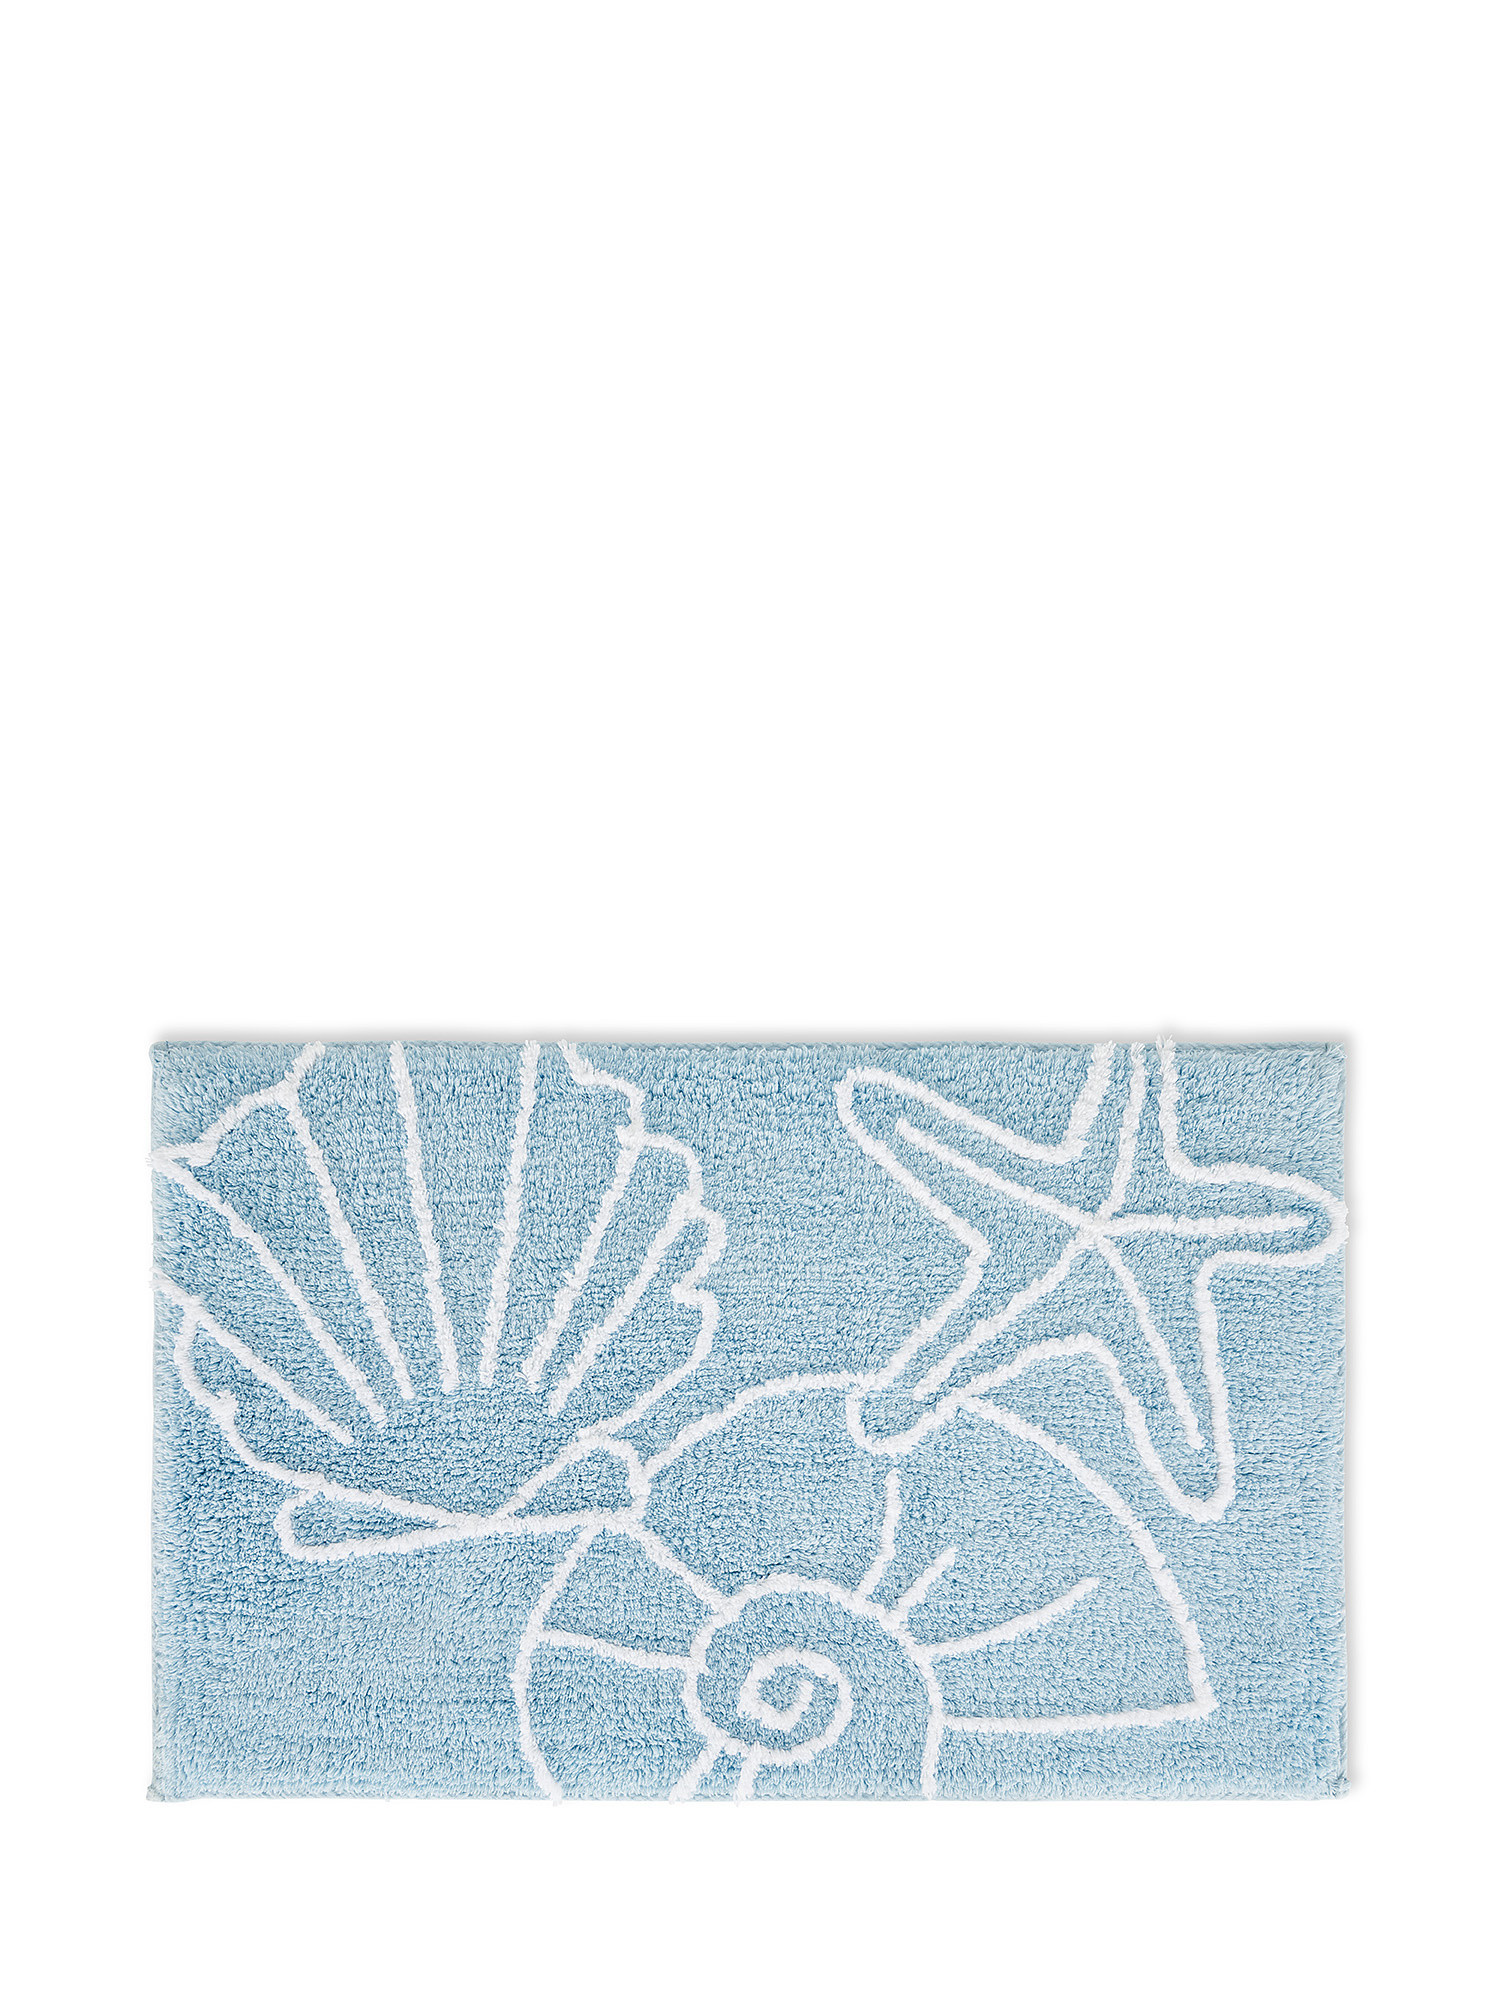 Tappeto bagno cotone motivo conchiglie, Azzurro, large image number 0